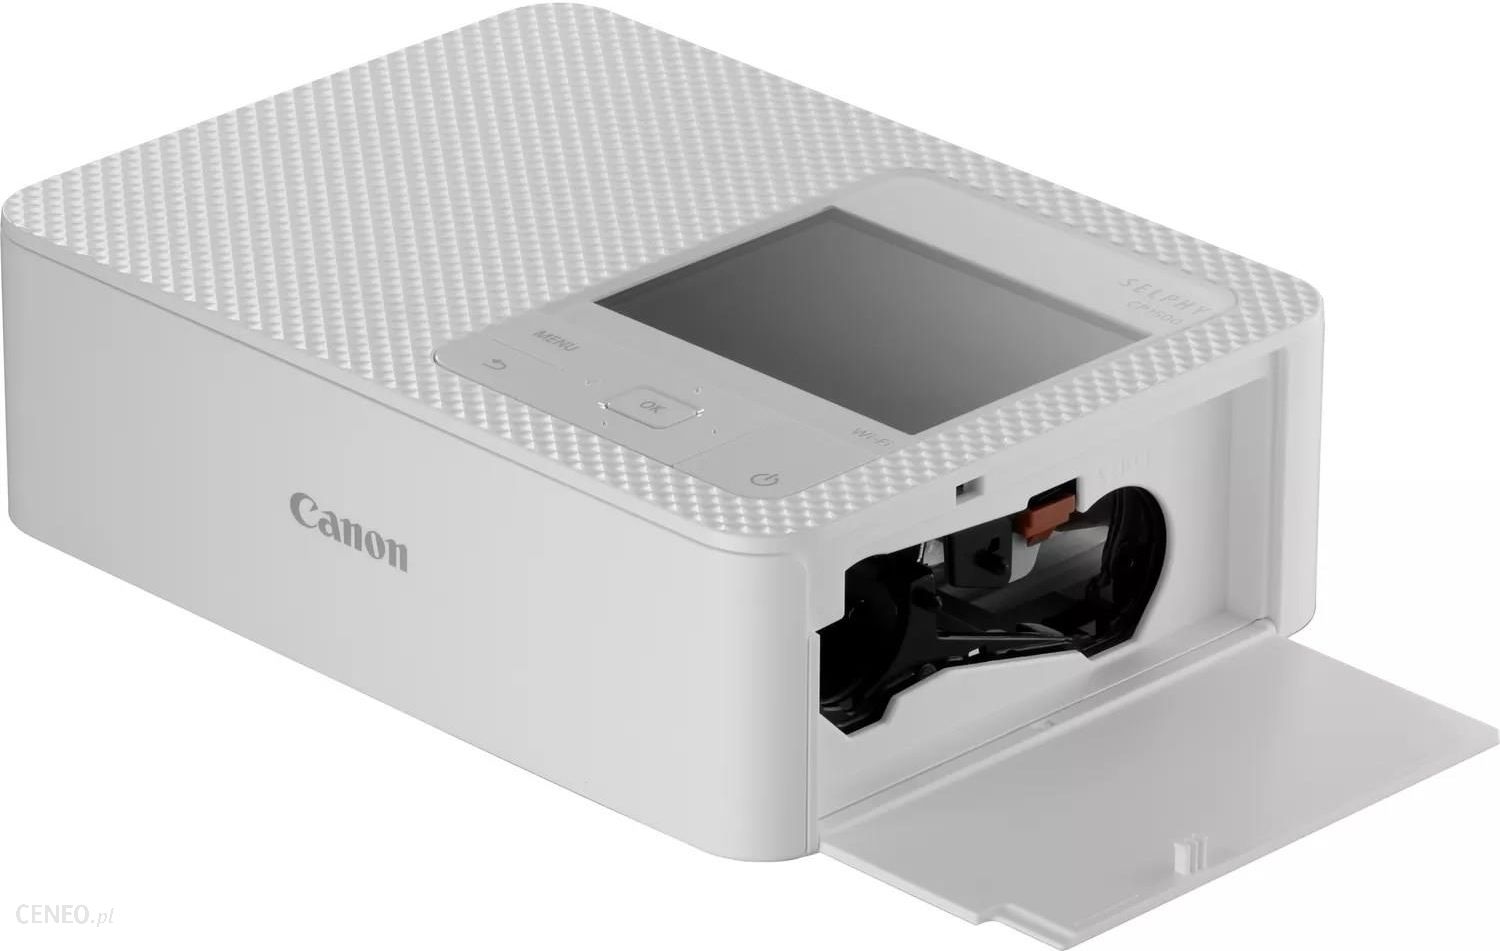 Canon SELPHY CP1500 przenośna drukarka fotograficzna biała 5540C003